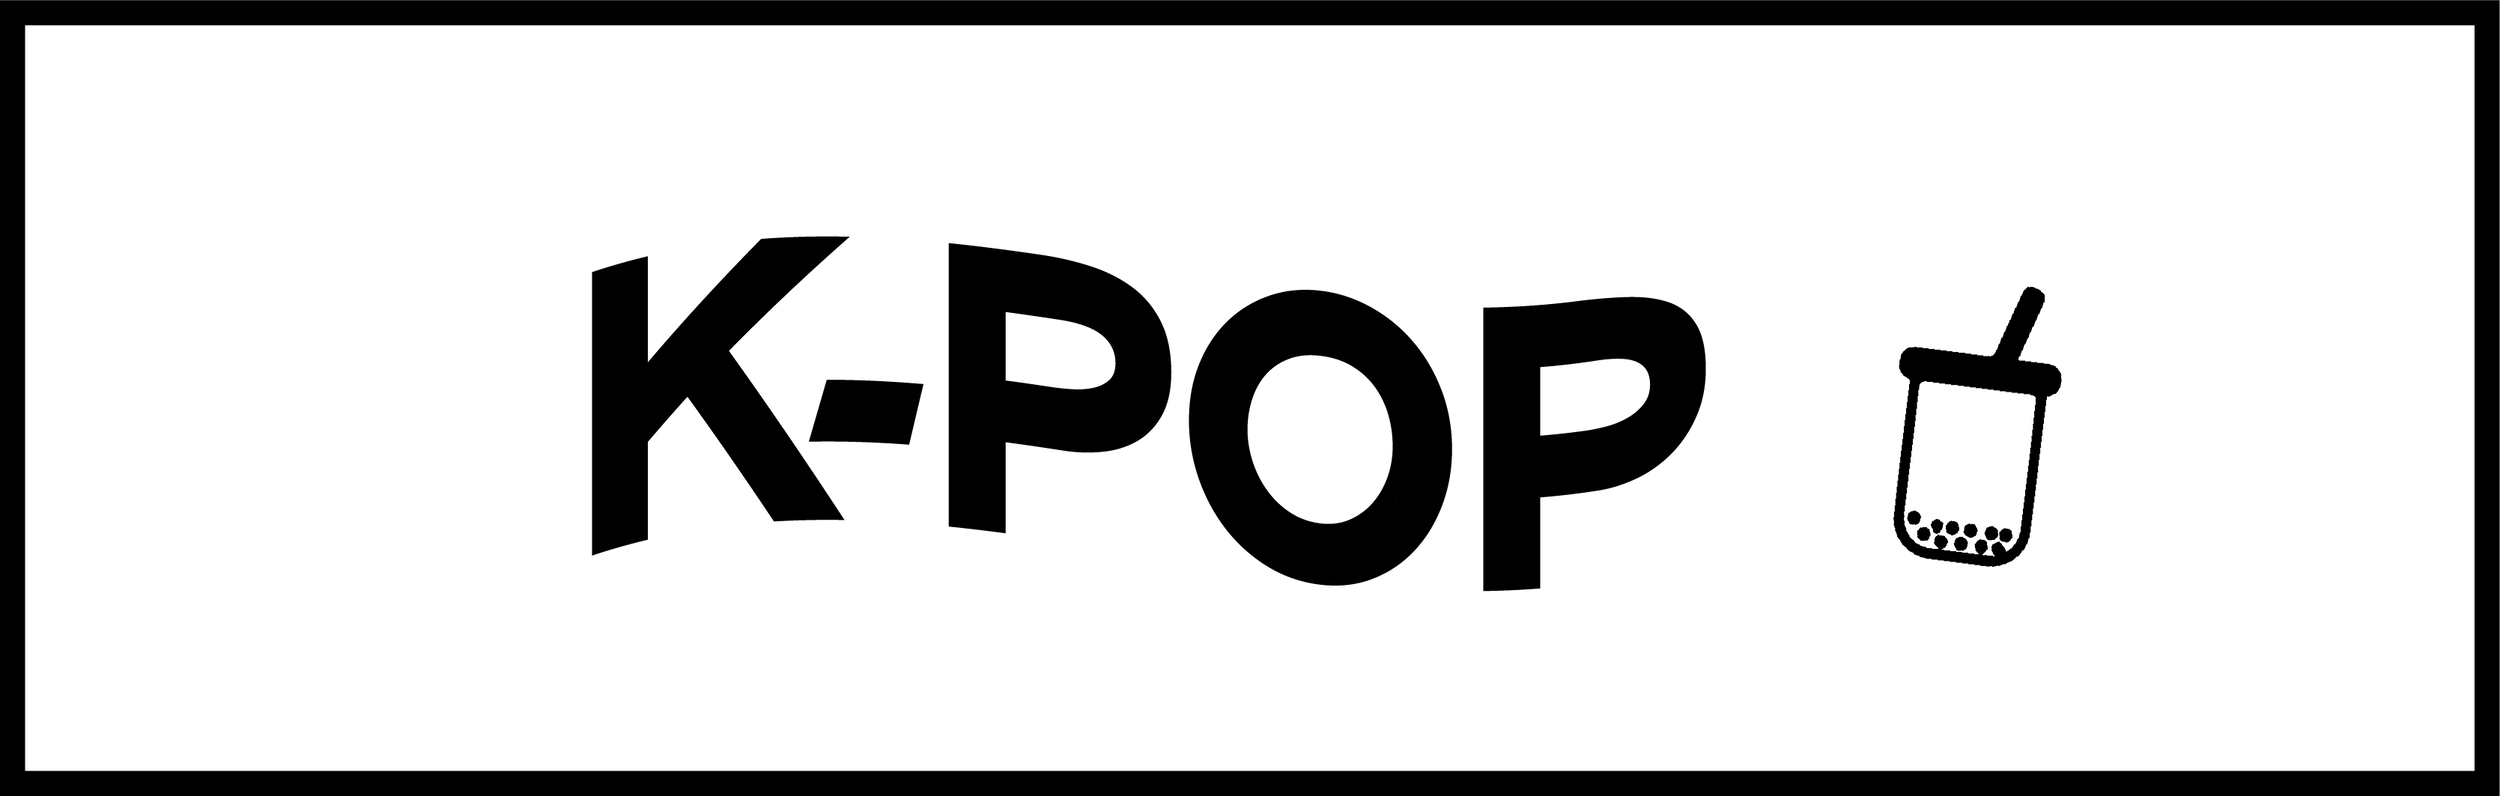 K Pop The Boba Culture